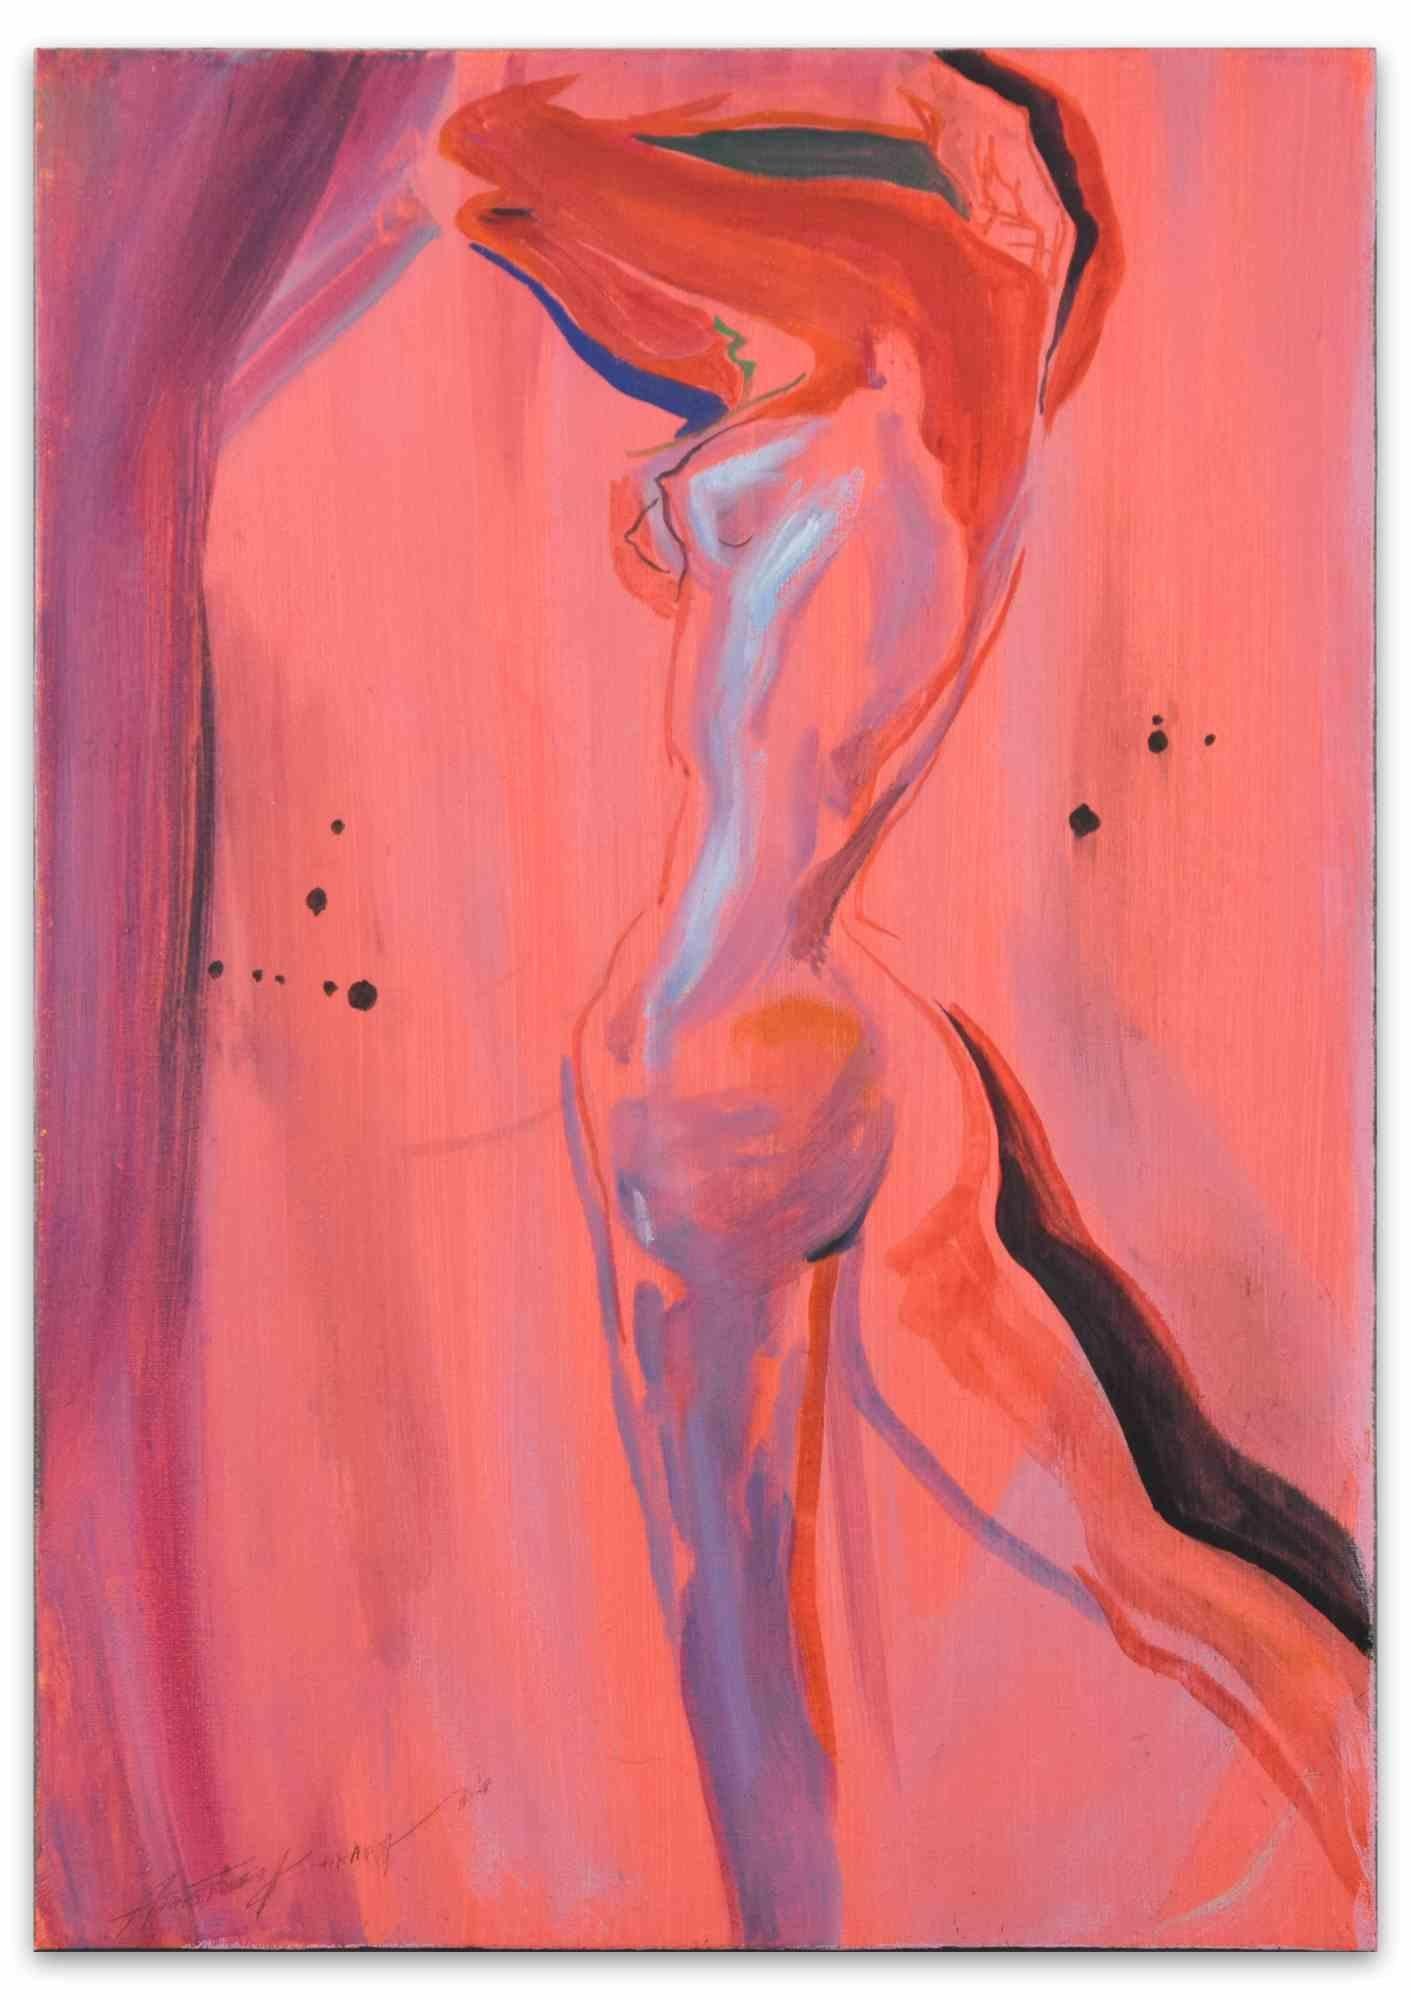 Nude of Woman - Oil Painting by Anastasia Kurakina - 2018